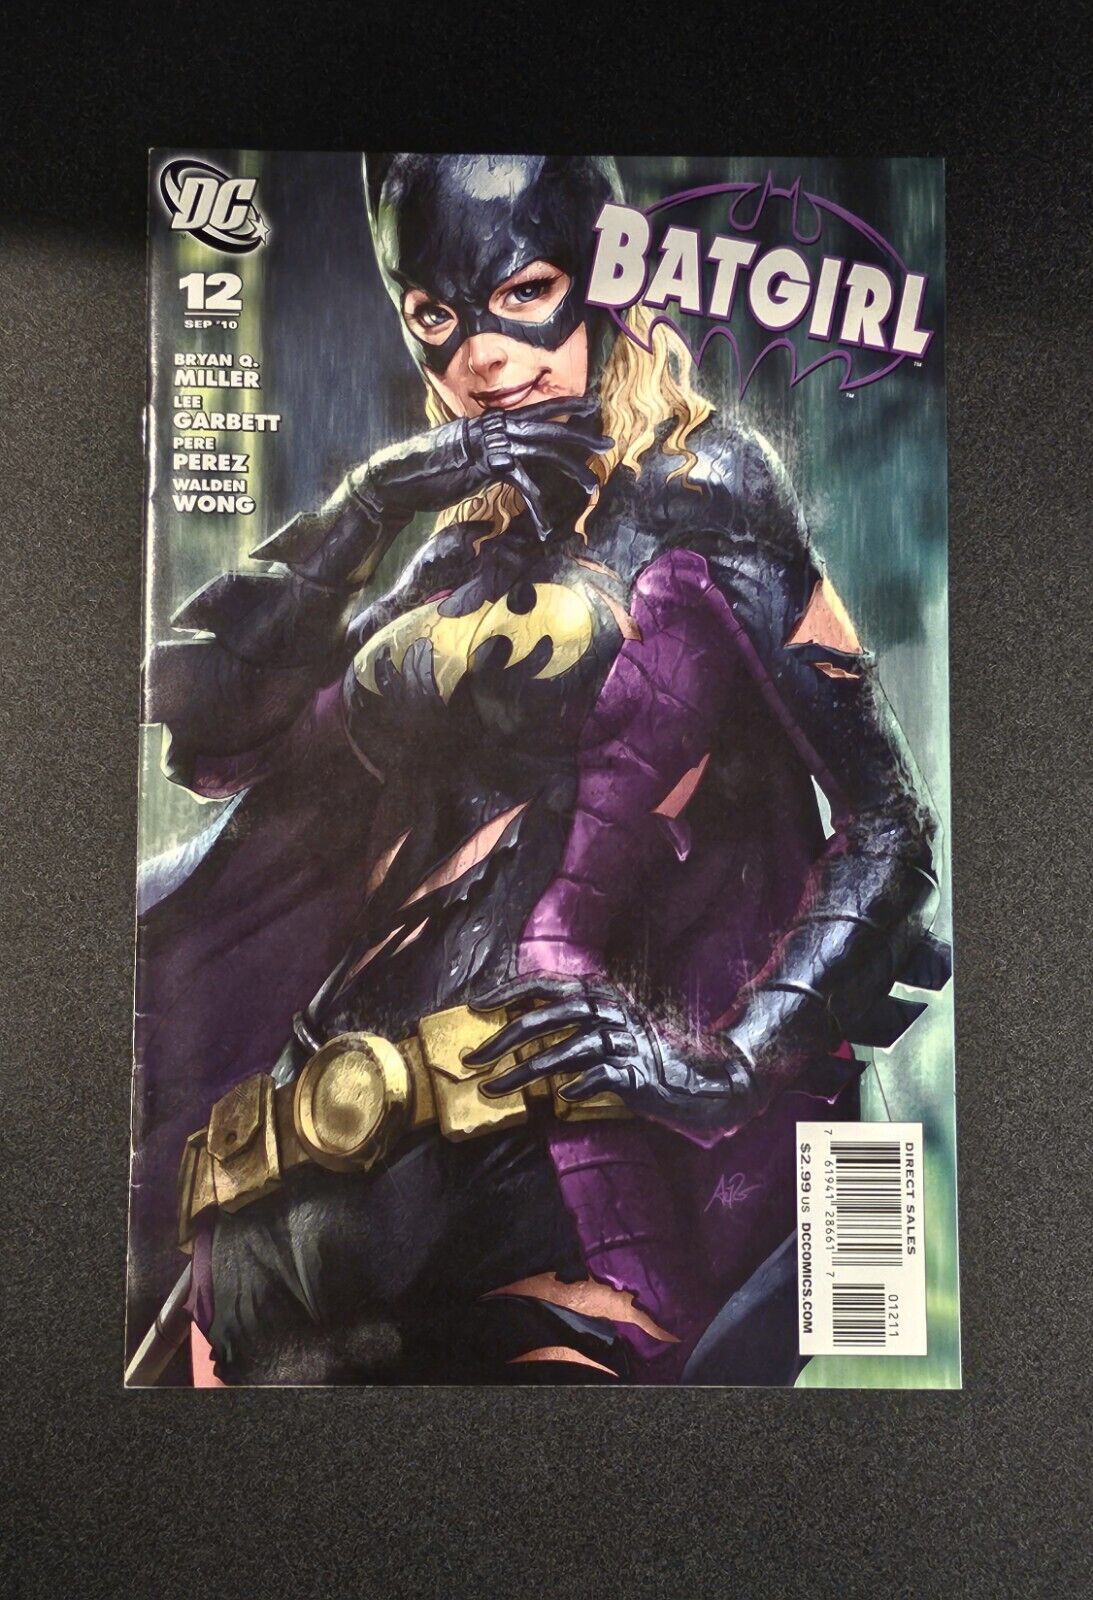 Batgirl #12 DC Comics September 2010 1st First Print Artgerm Limited Release 